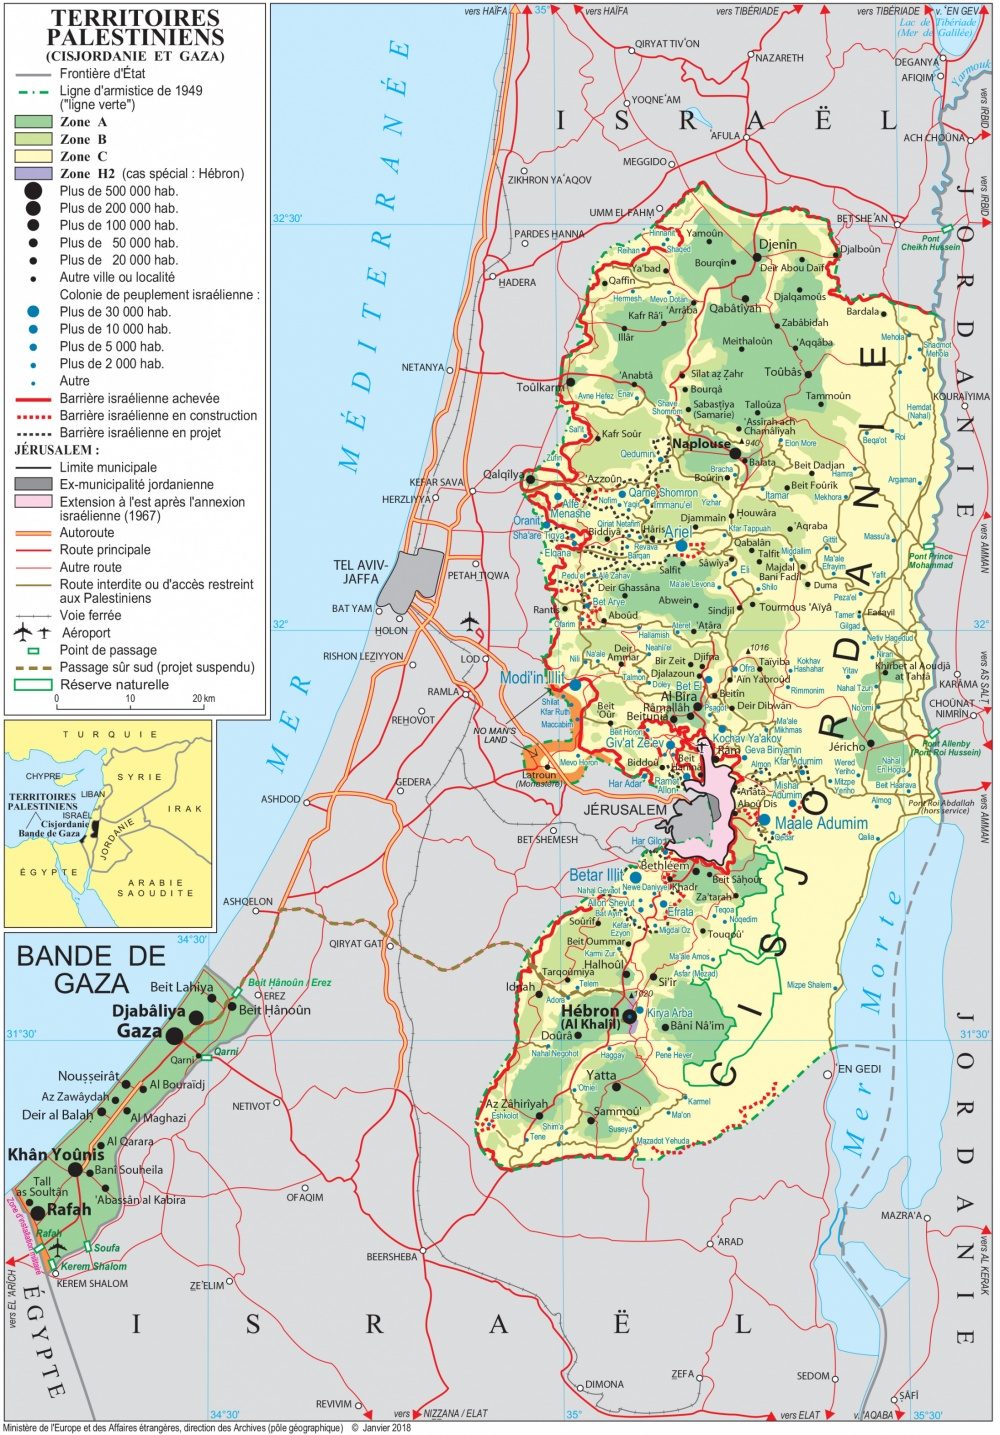 [Update] Bản đồ hành chính đất nước Palestine (Palestine Map) phóng to năm 2022 23